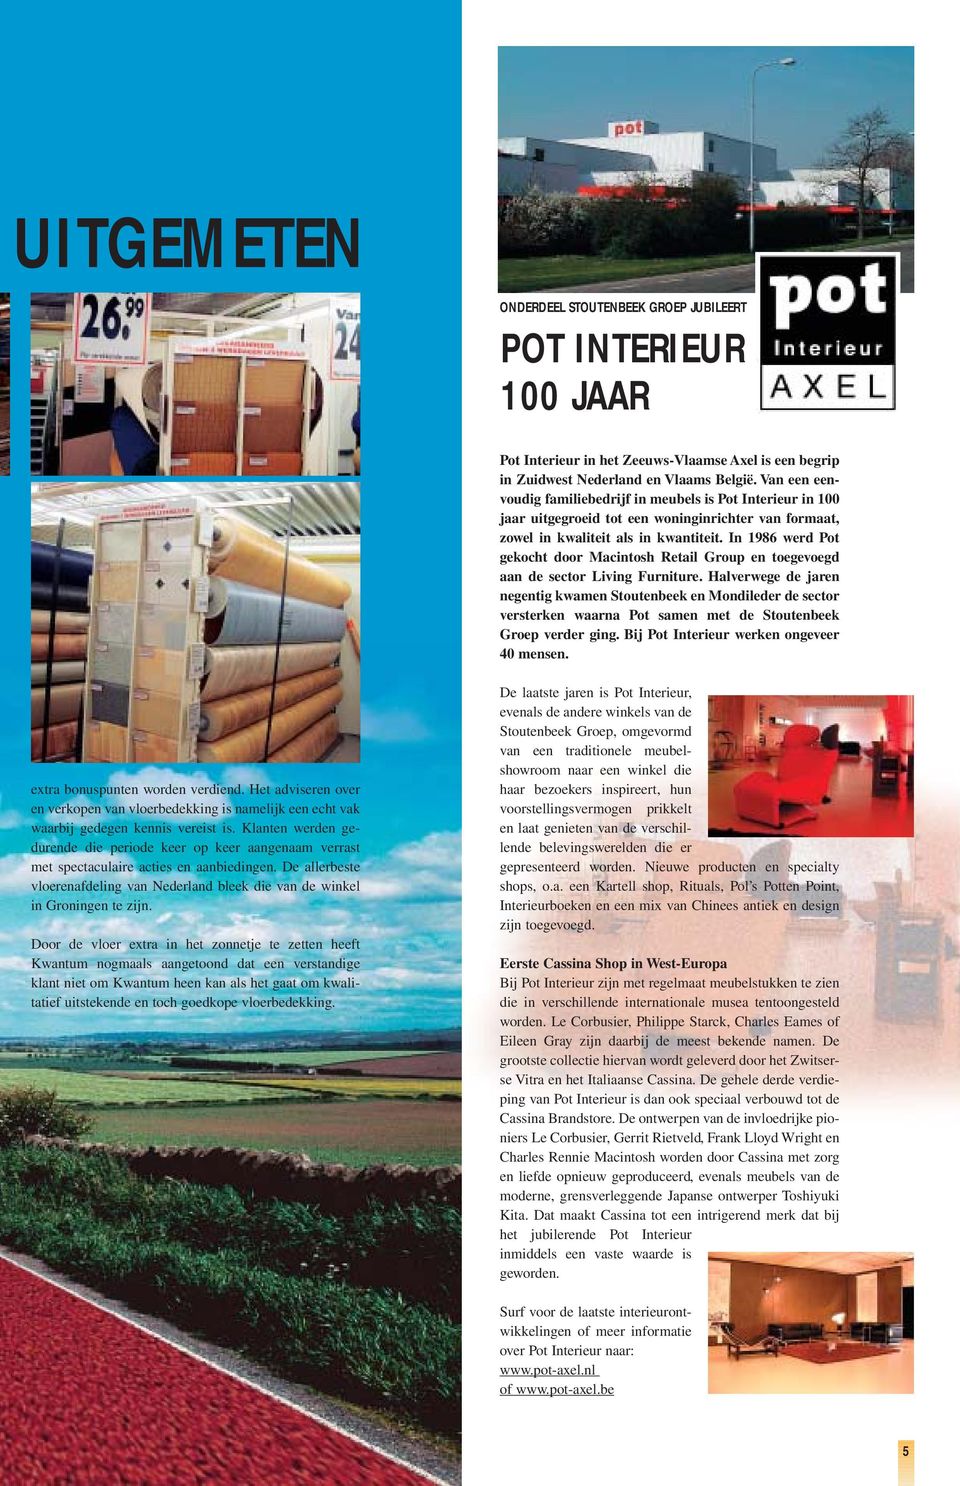 In 1986 werd Pot gekocht door Macintosh Retail Group en toegevoegd aan de sector Living Furniture.